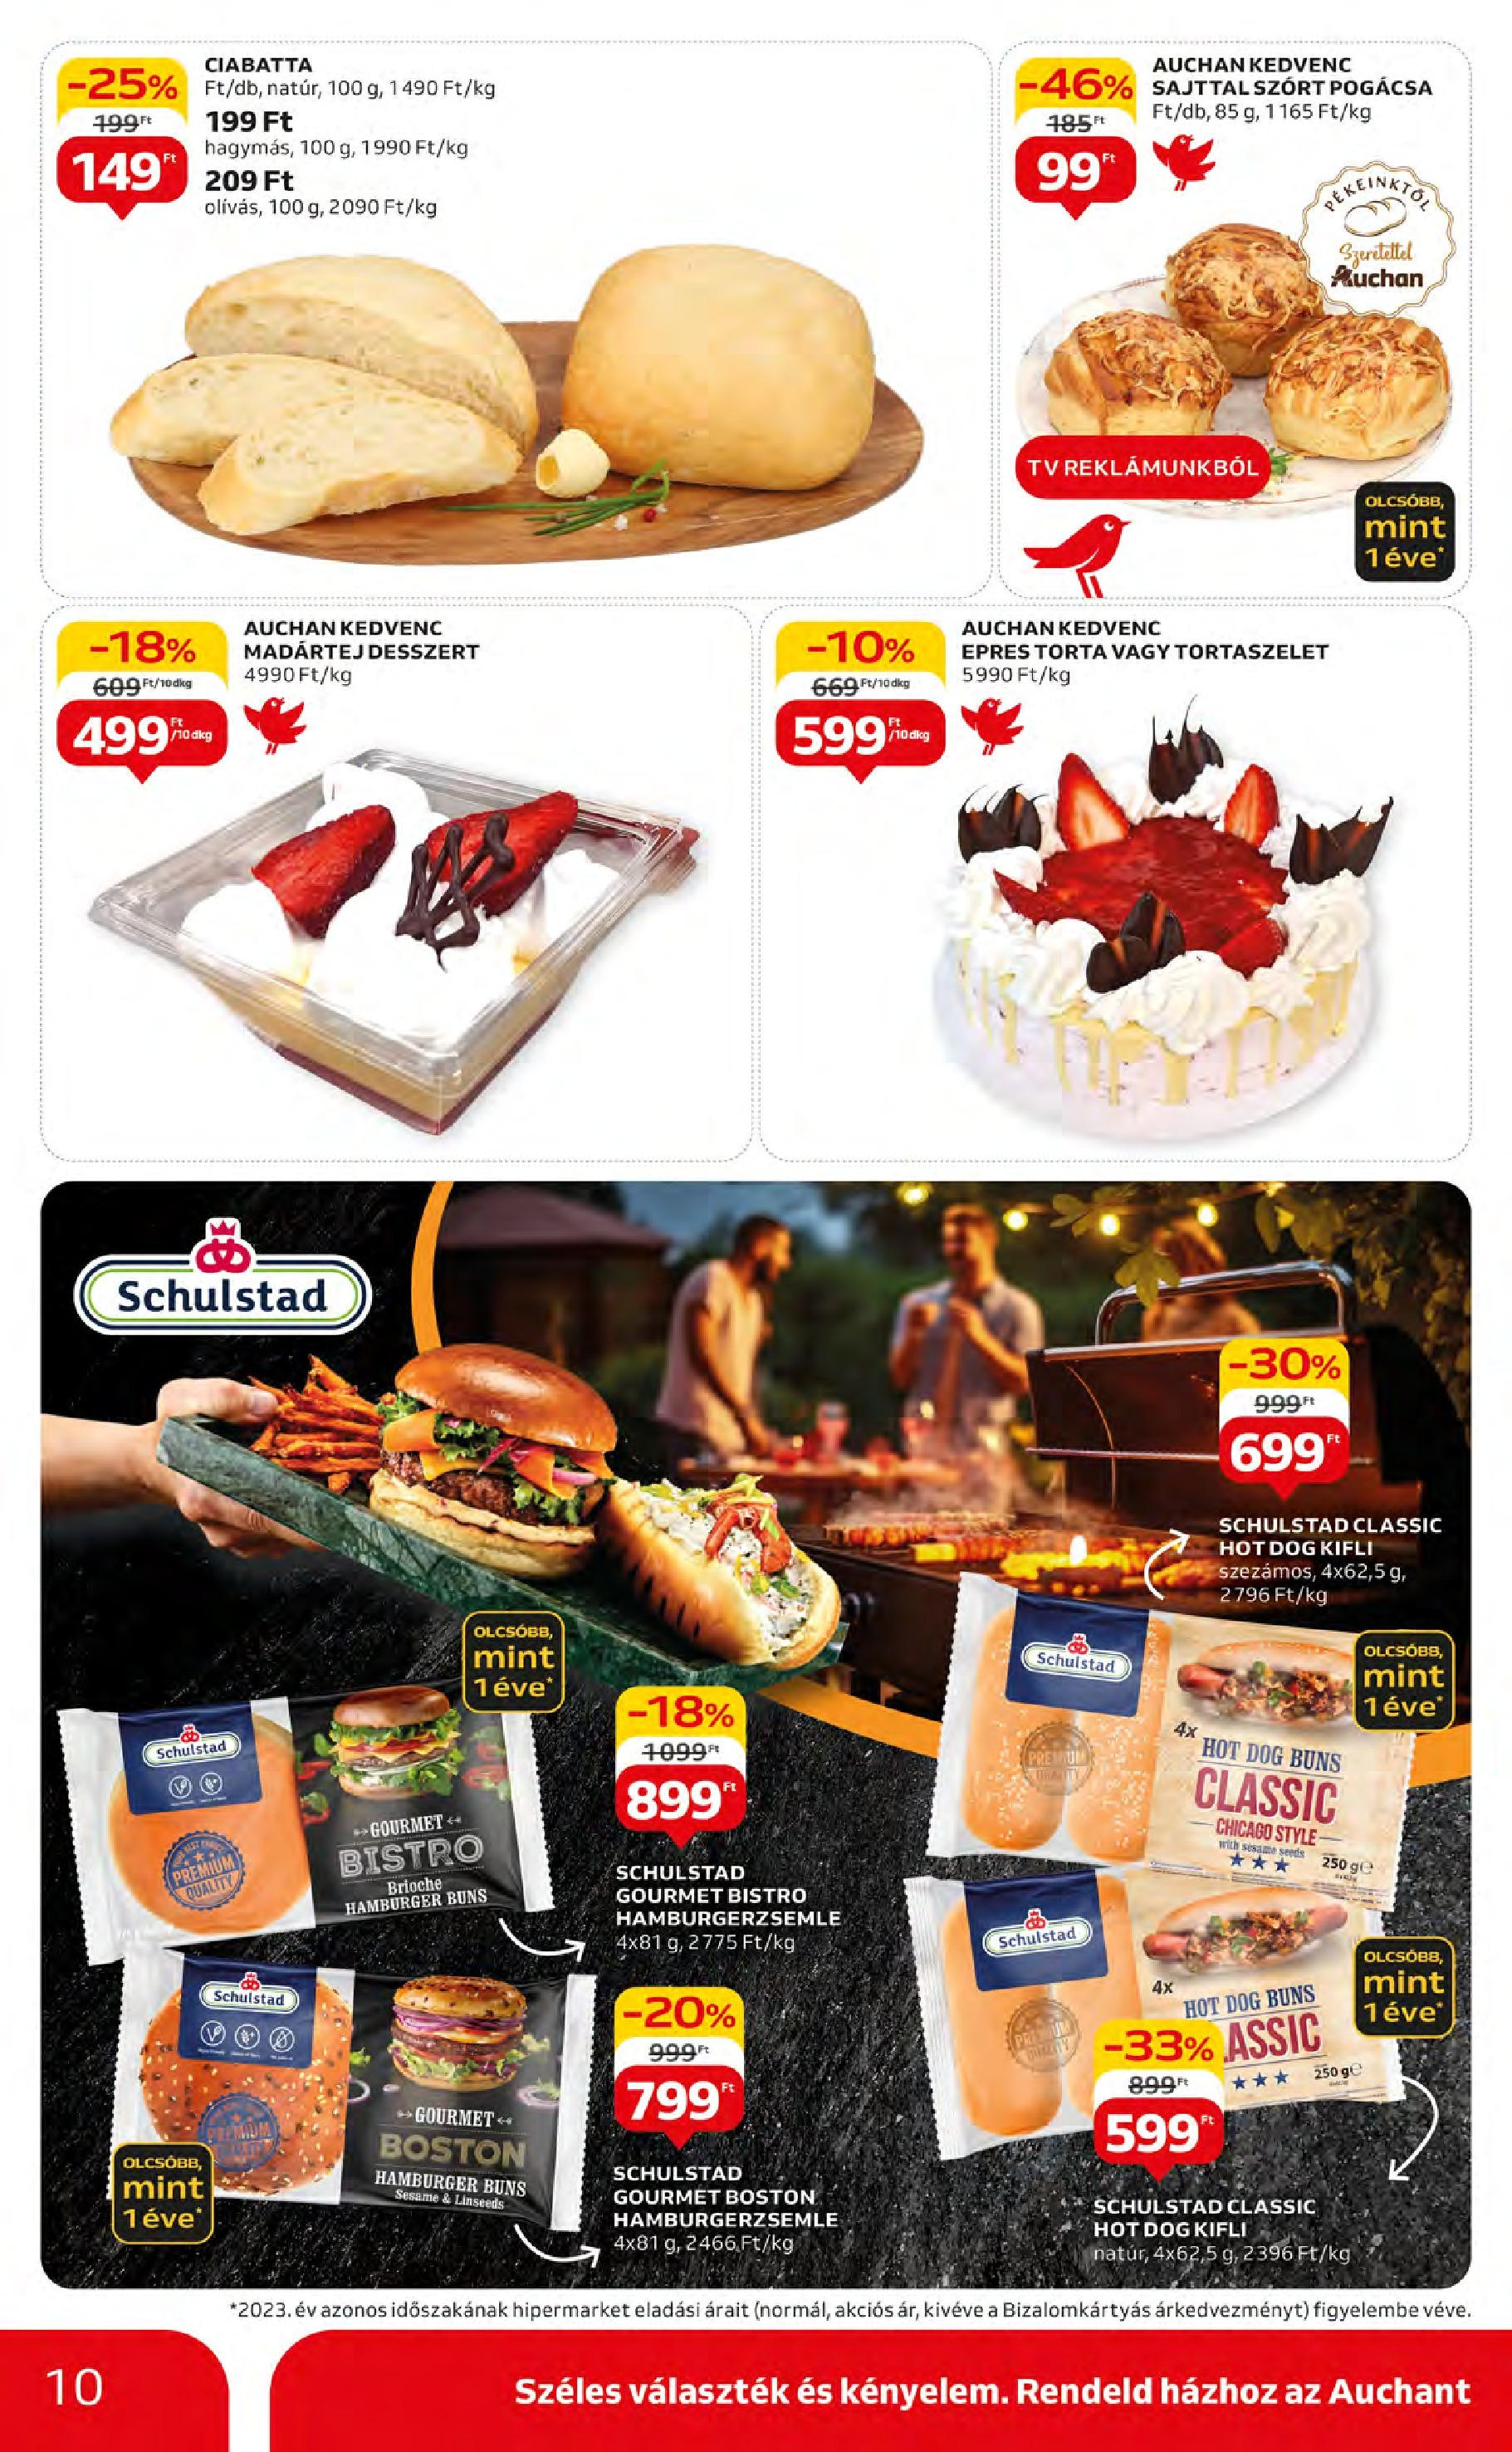 Auchan  Akciós újság - 2024.05.09. -tól/töl > akció, szórólap 🛍️ | Oldal: 10 | Termékek: Torta, Hot dog, Ciabatta, Pogácsa